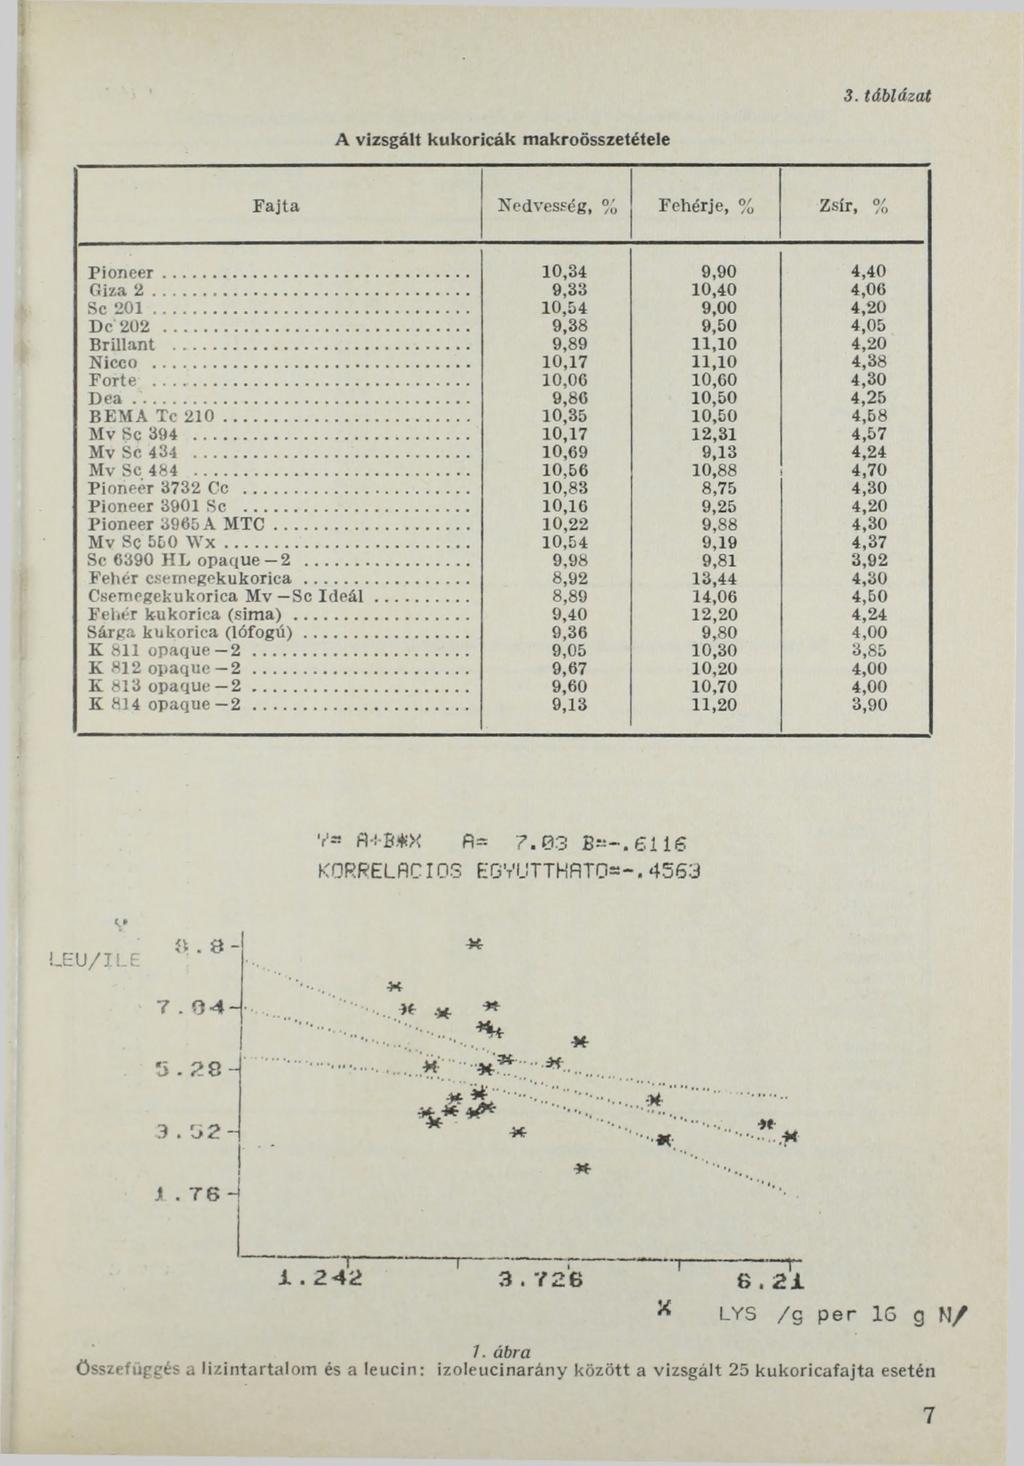 3. táblázat A vizsgált kukoricák makroösszetétele F a jta Nedvesség, % Fehérje, % Zsír, % P io n e e r... 10,34 9,90 4,40 Giza 2... 9,33 10,40 4,06 Se 2 0 1... 10,54 9,00 4,20 De 202.